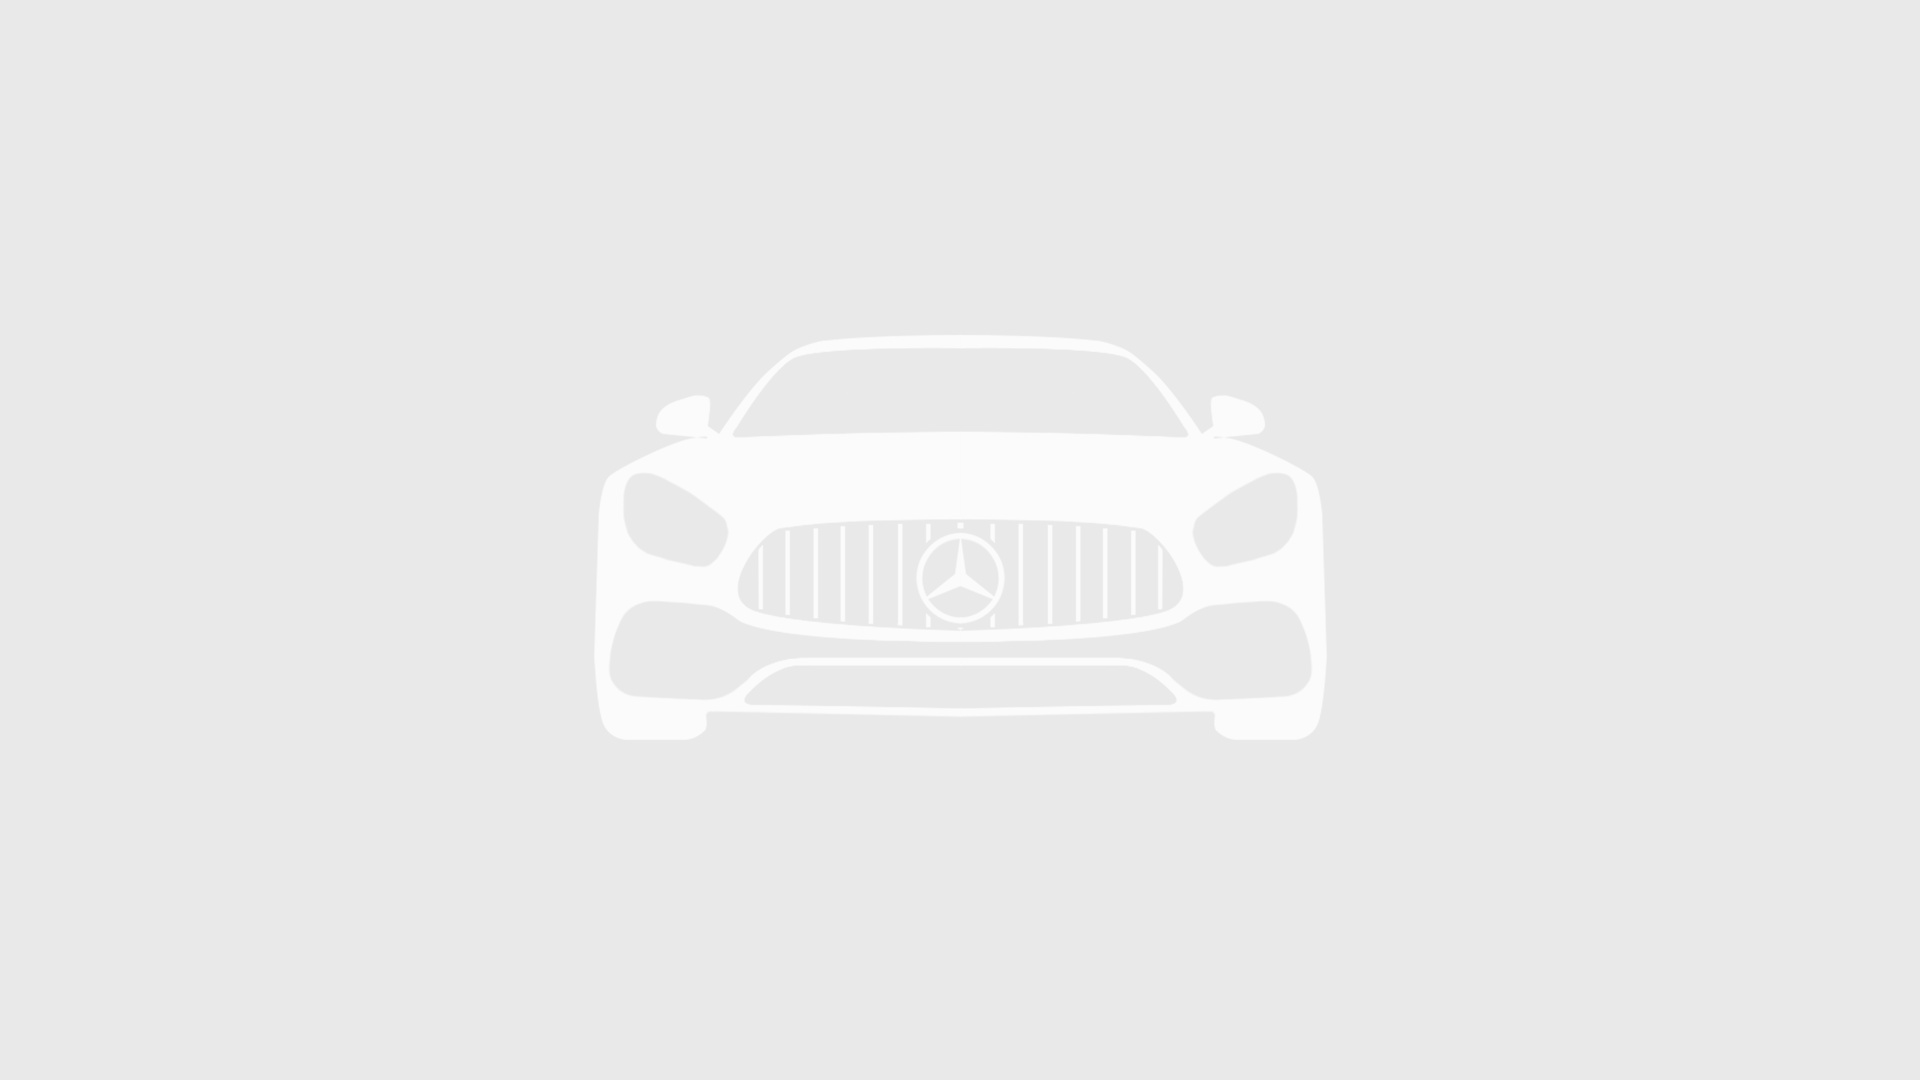 Mercedes-Benz комплектация 311 CDI двигатель 2.1 литра (114 л.с.) Белый